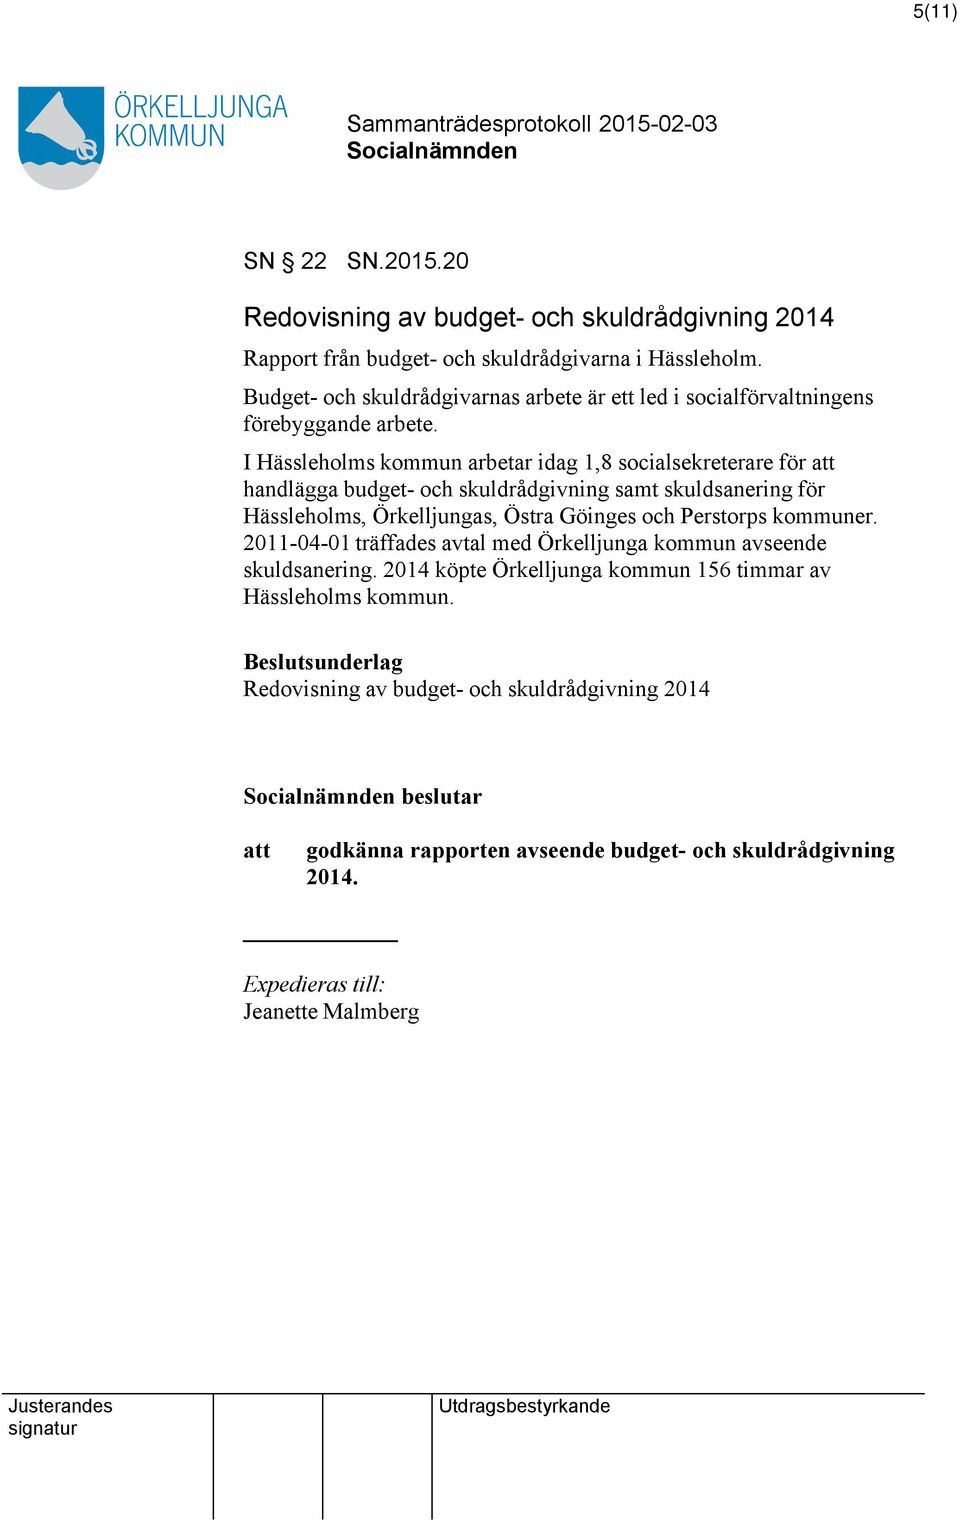 I Hässleholms kommun arbetar idag 1,8 socialsekreterare för handlägga budget- och skuldrådgivning samt skuldsanering för Hässleholms, Örkelljungas, Östra Göinges och